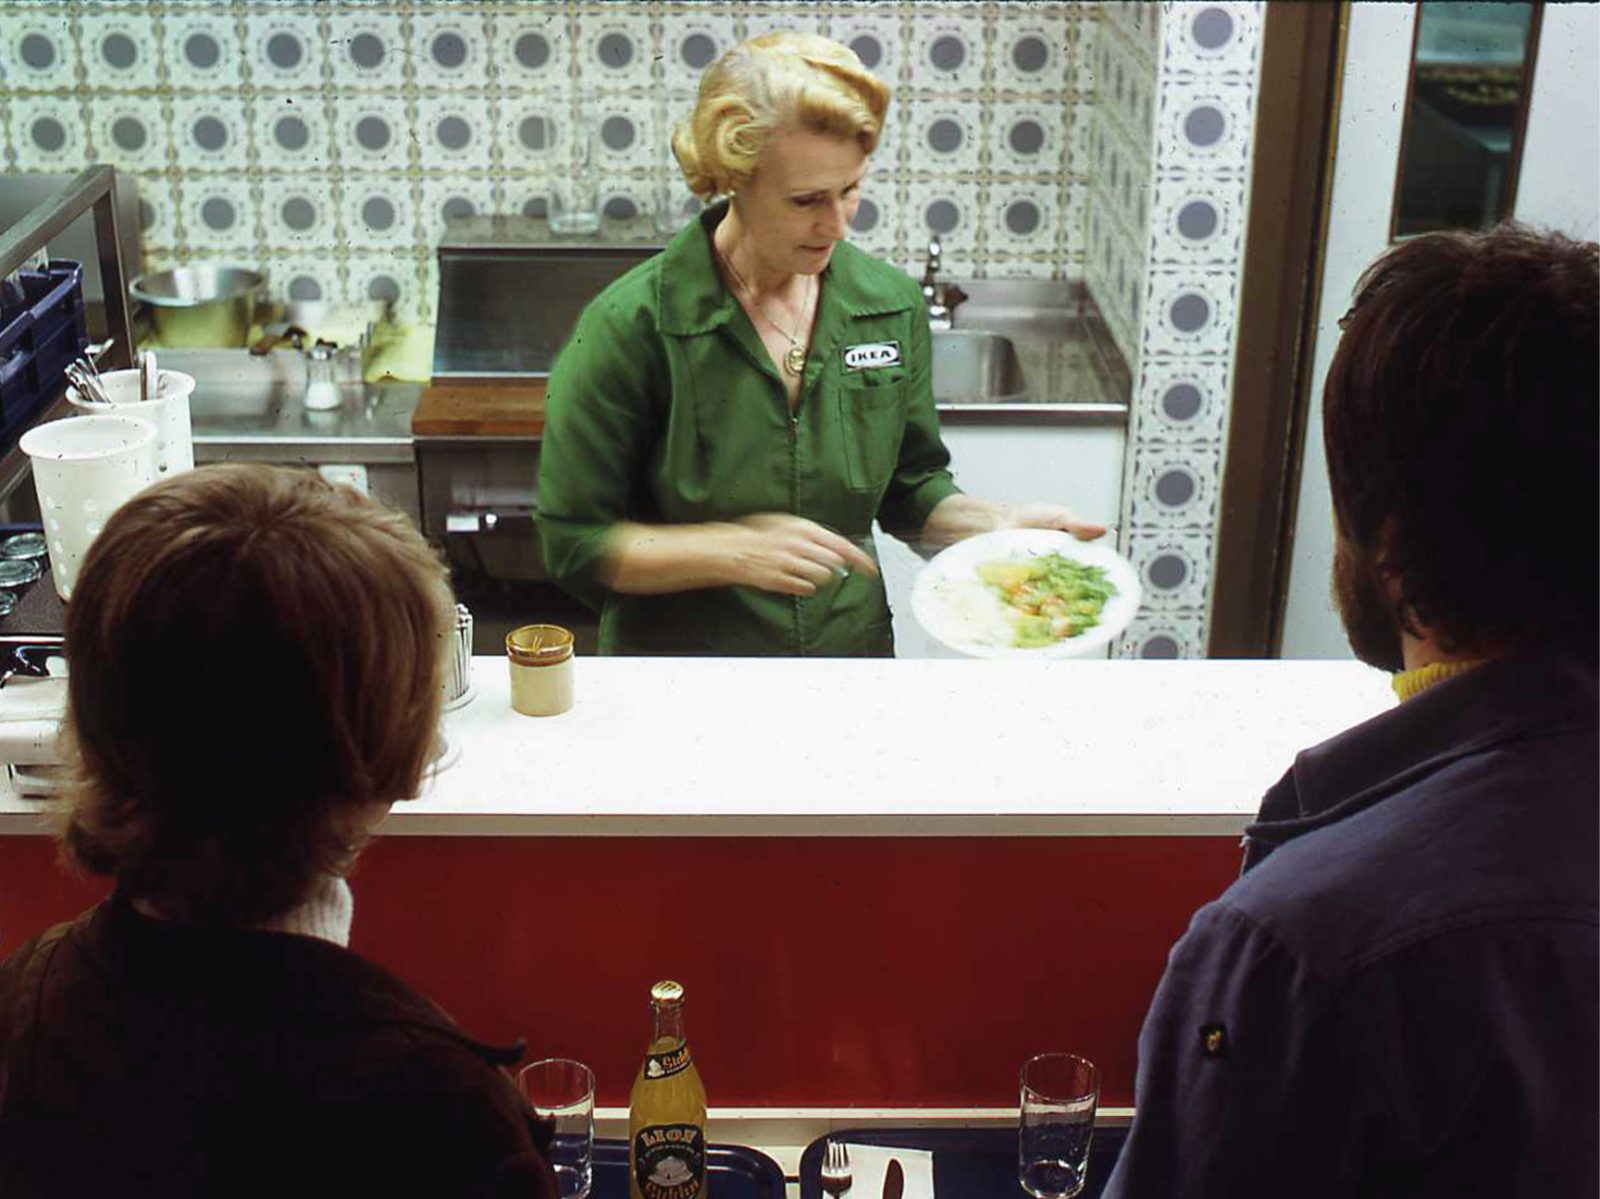 Paar an der Selbstbedienungstheke wartet auf sein Essen, das von einer blonden Frau in grüner IKEA Uniform angerichtet wird.